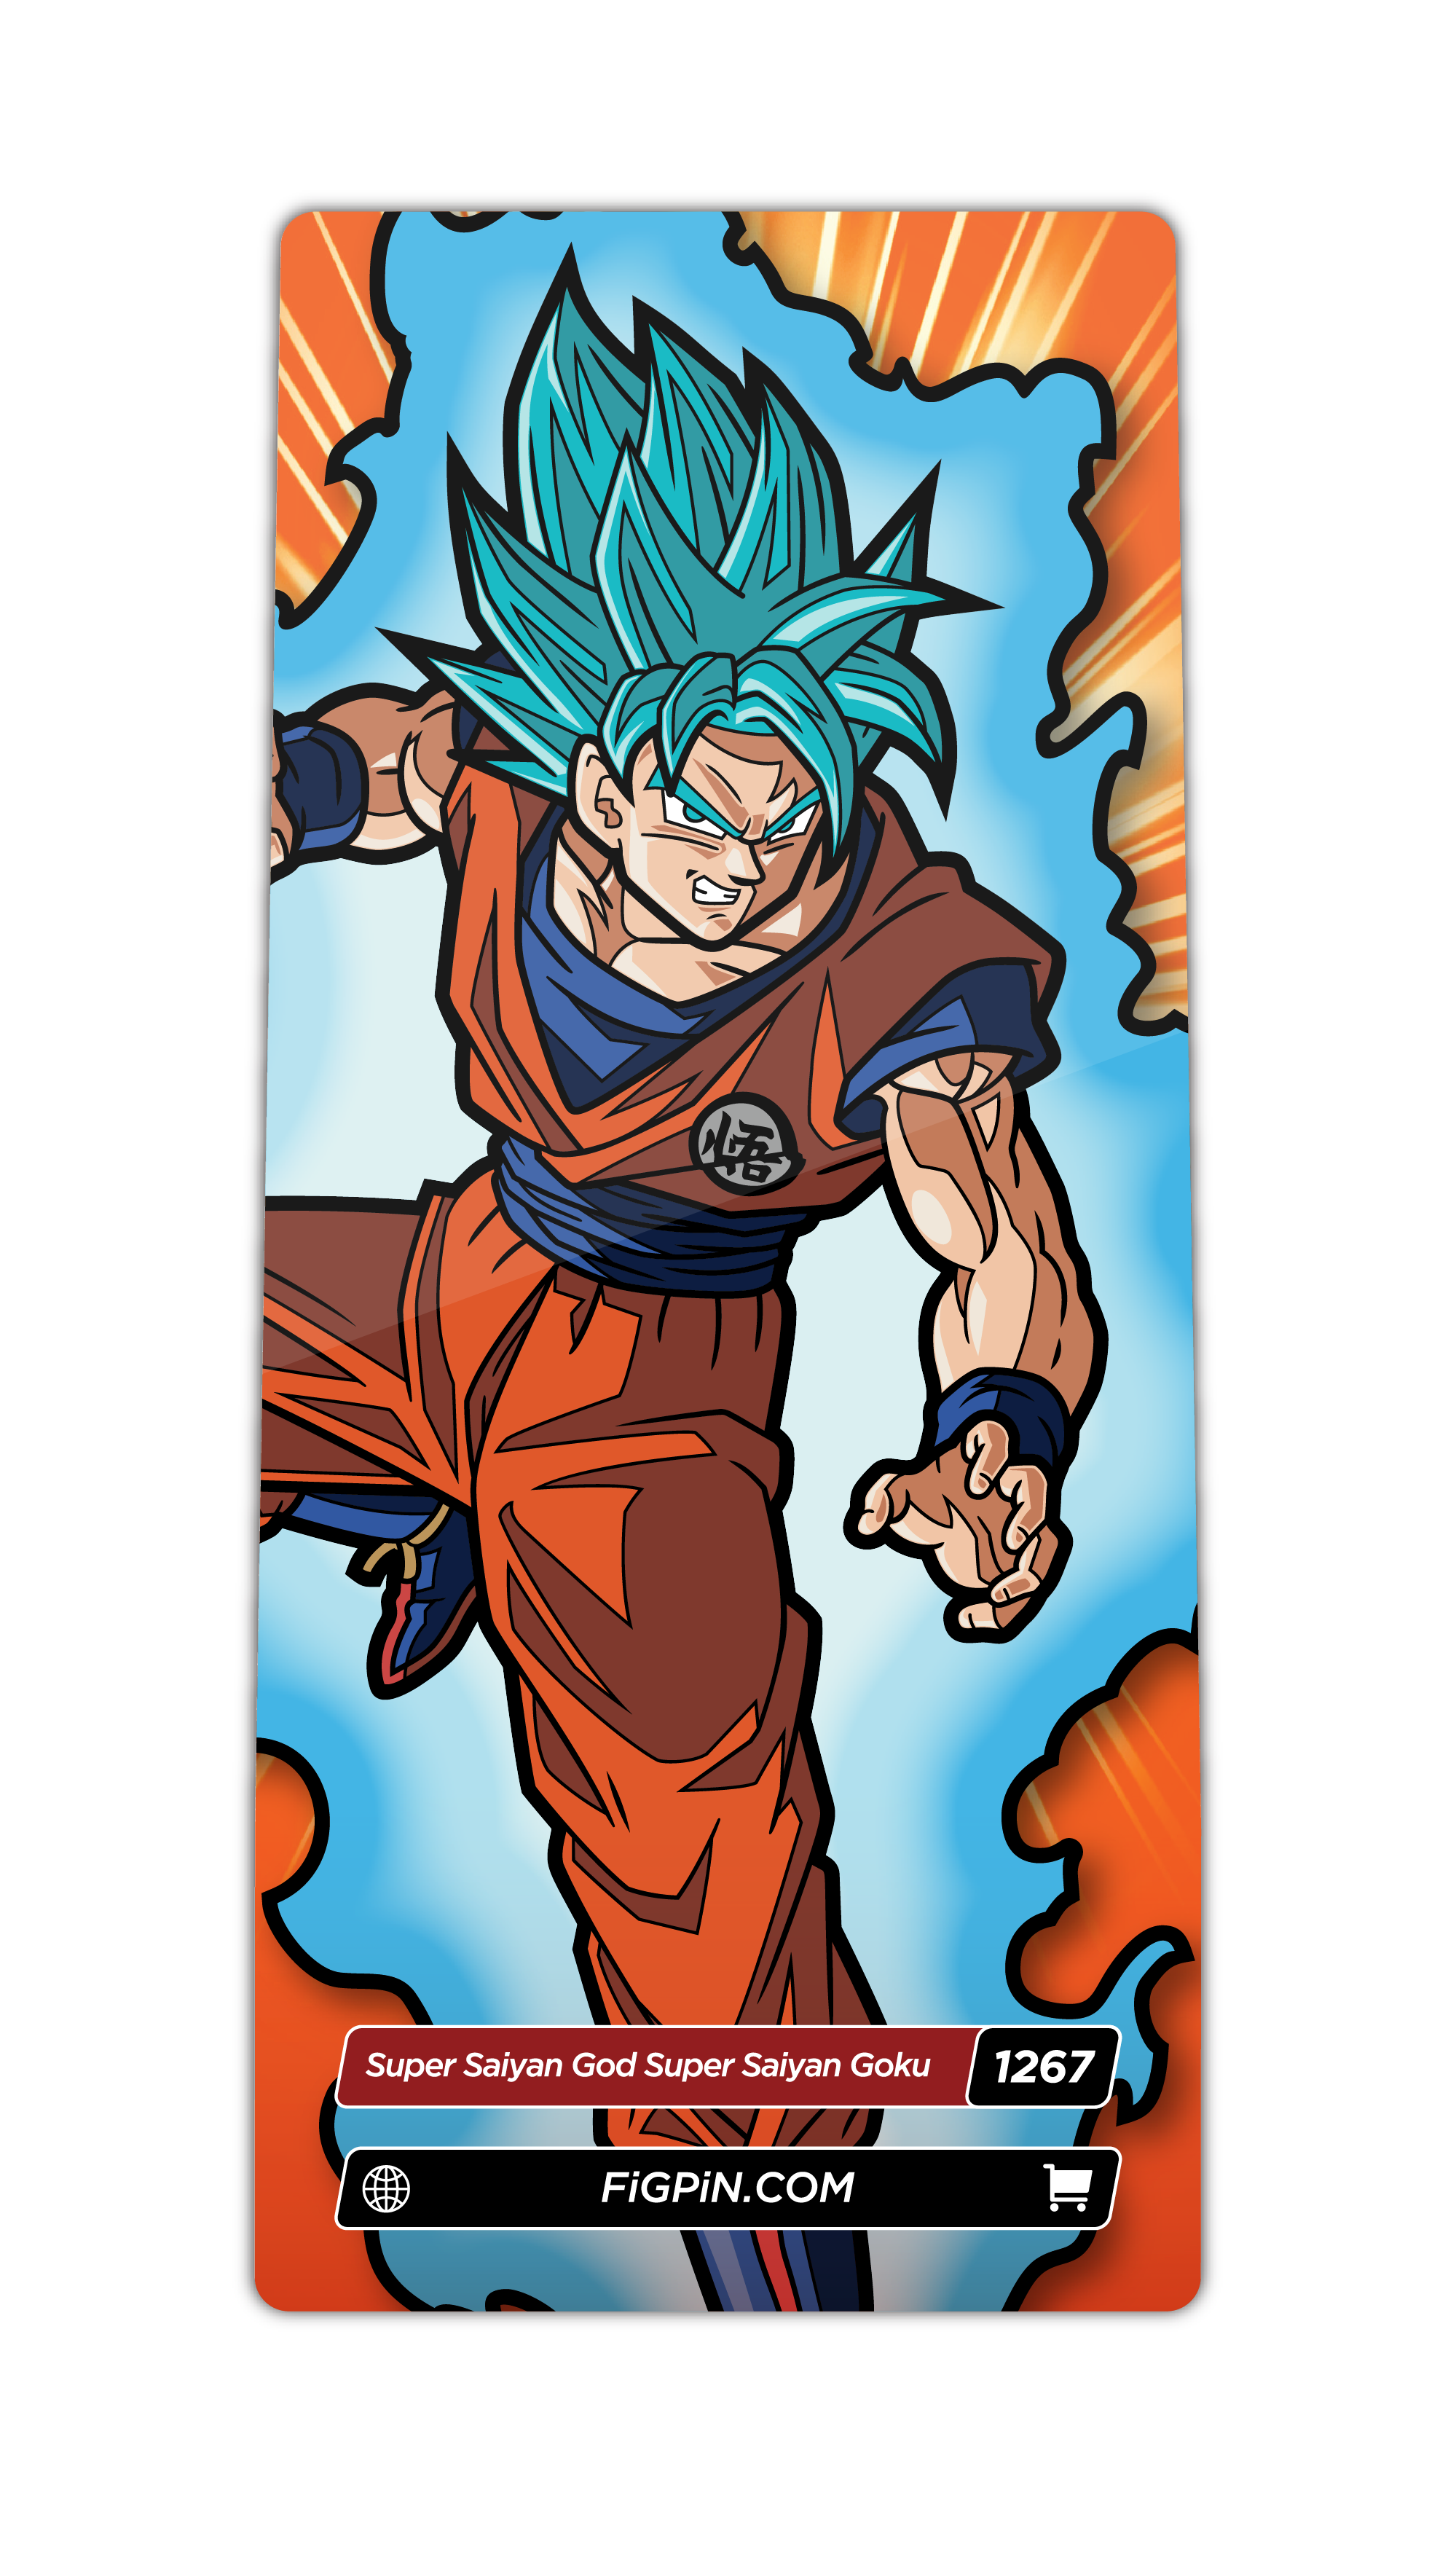 My Goku SSJ God drawing. : r/dbz